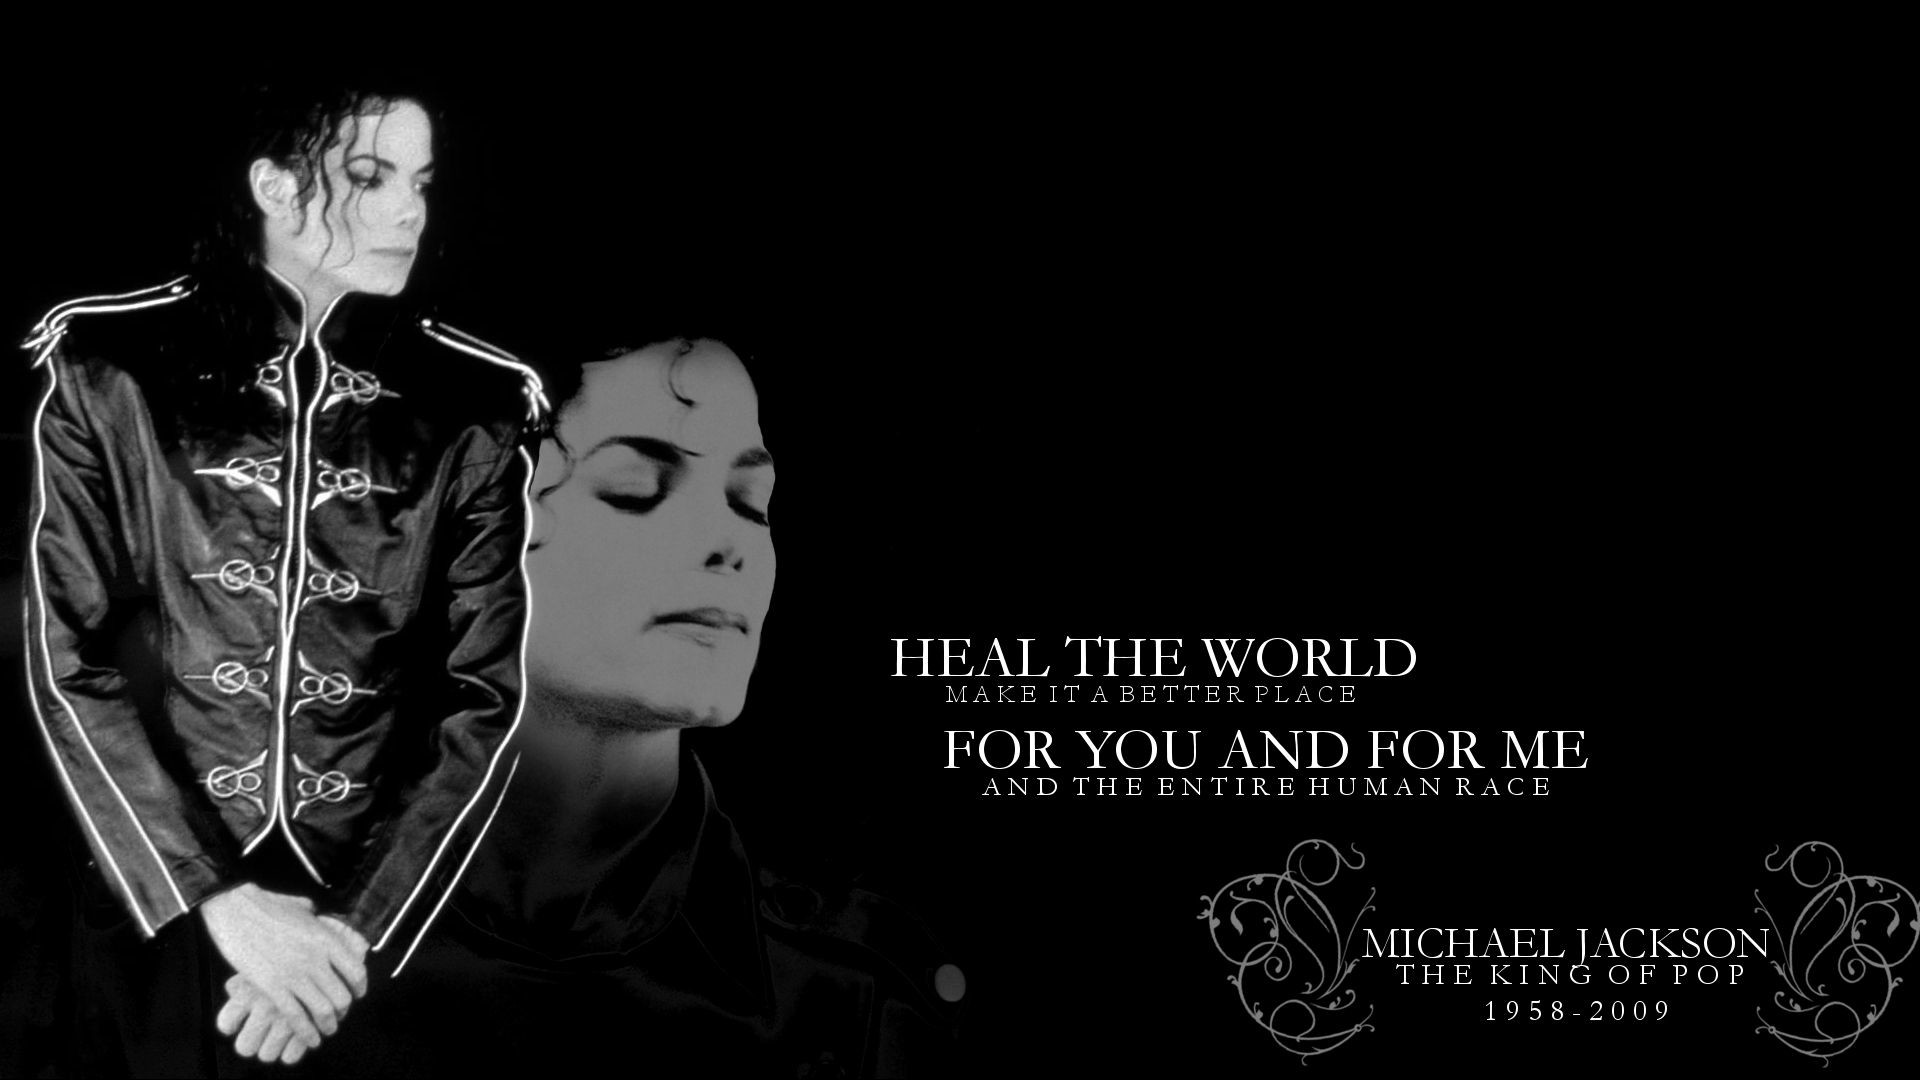 1920x1080 Michael Jackson Images